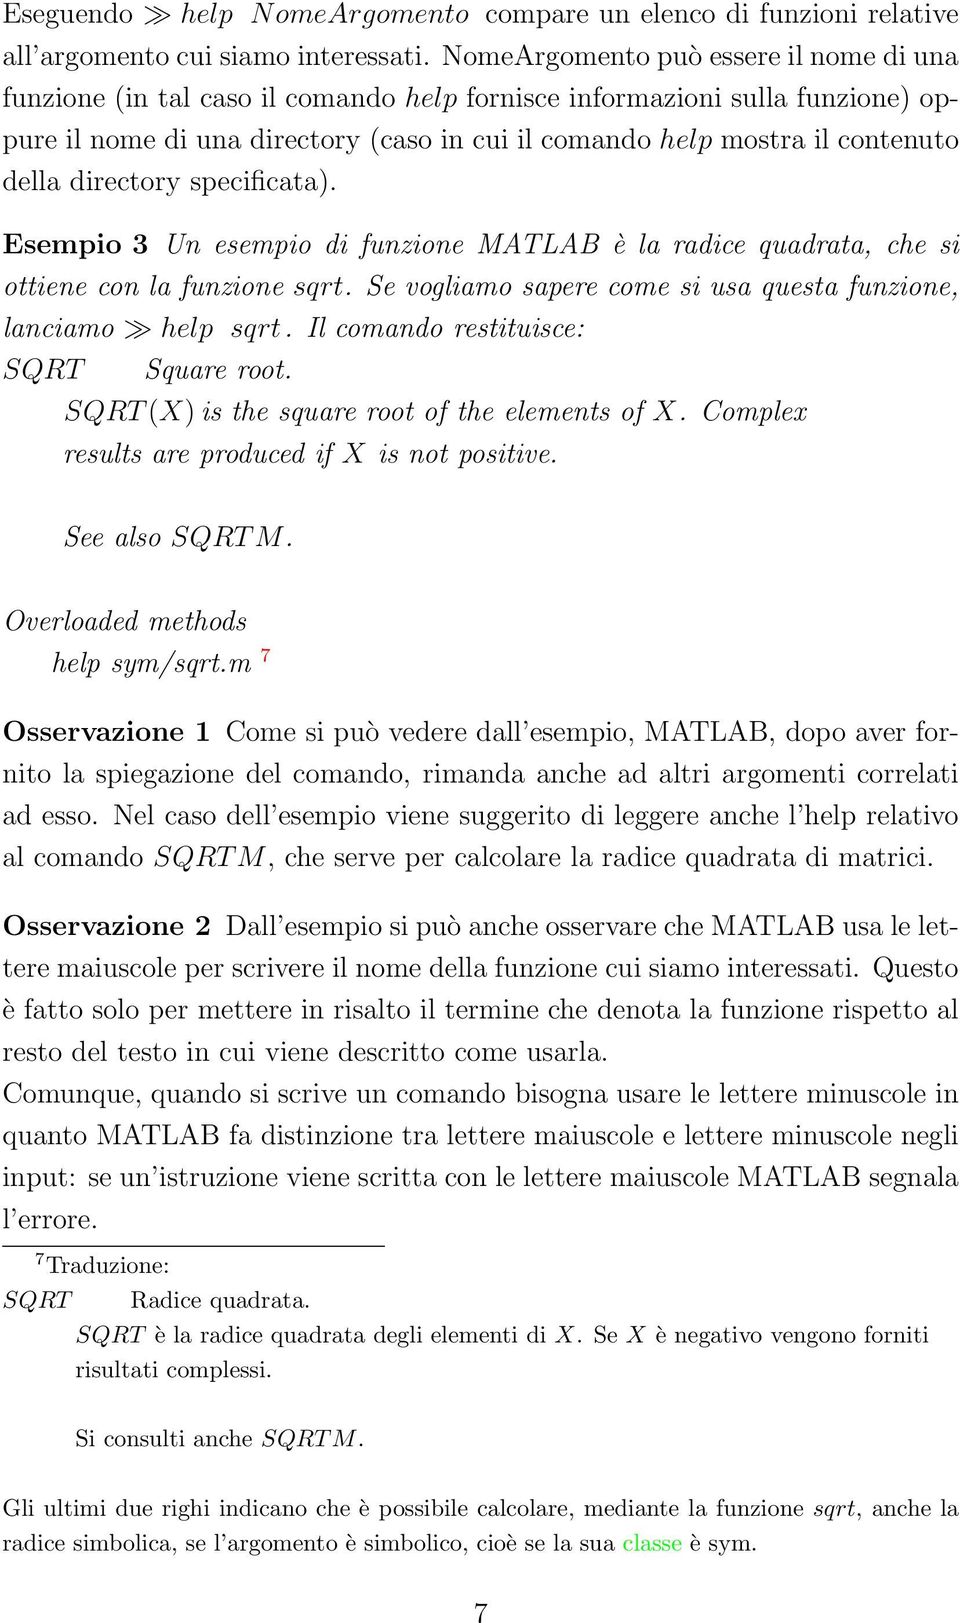 della directory specificata). Esempio 3 Un esempio di funzione MATLAB è la radice quadrata, che si ottiene con la funzione sqrt. Se vogliamo sapere come si usa questa funzione, lanciamo help sqrt.